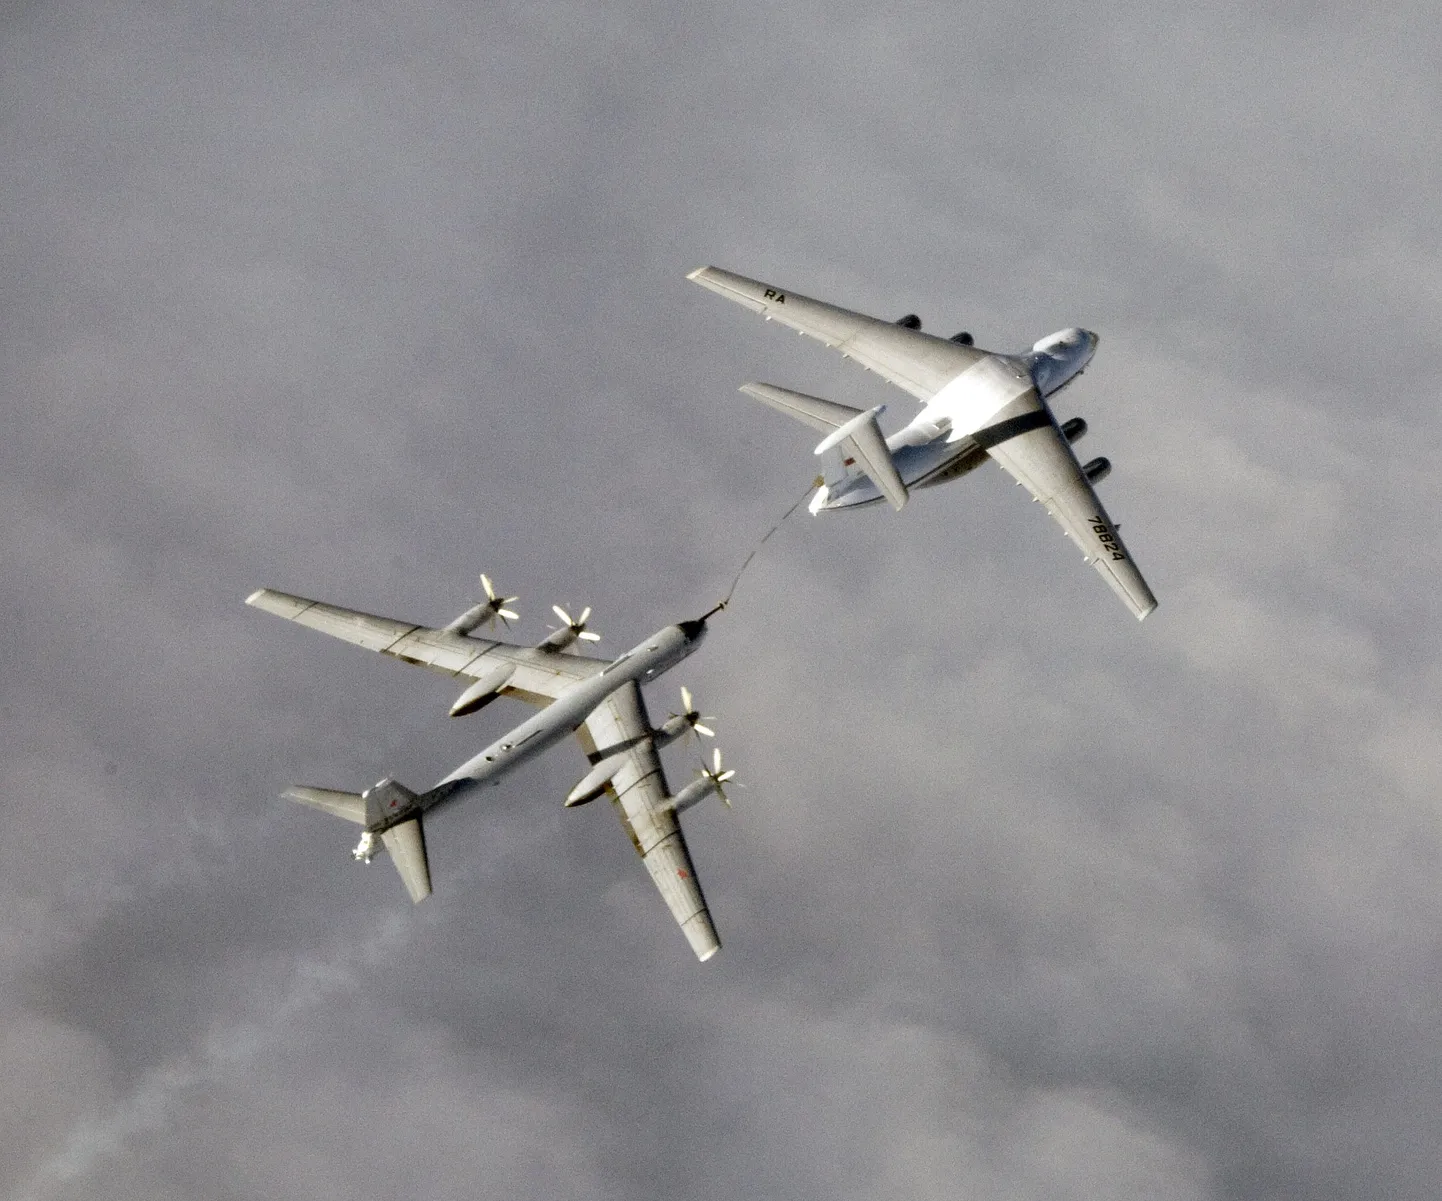 Vene sõjalennuki Tupolev Tu-95.